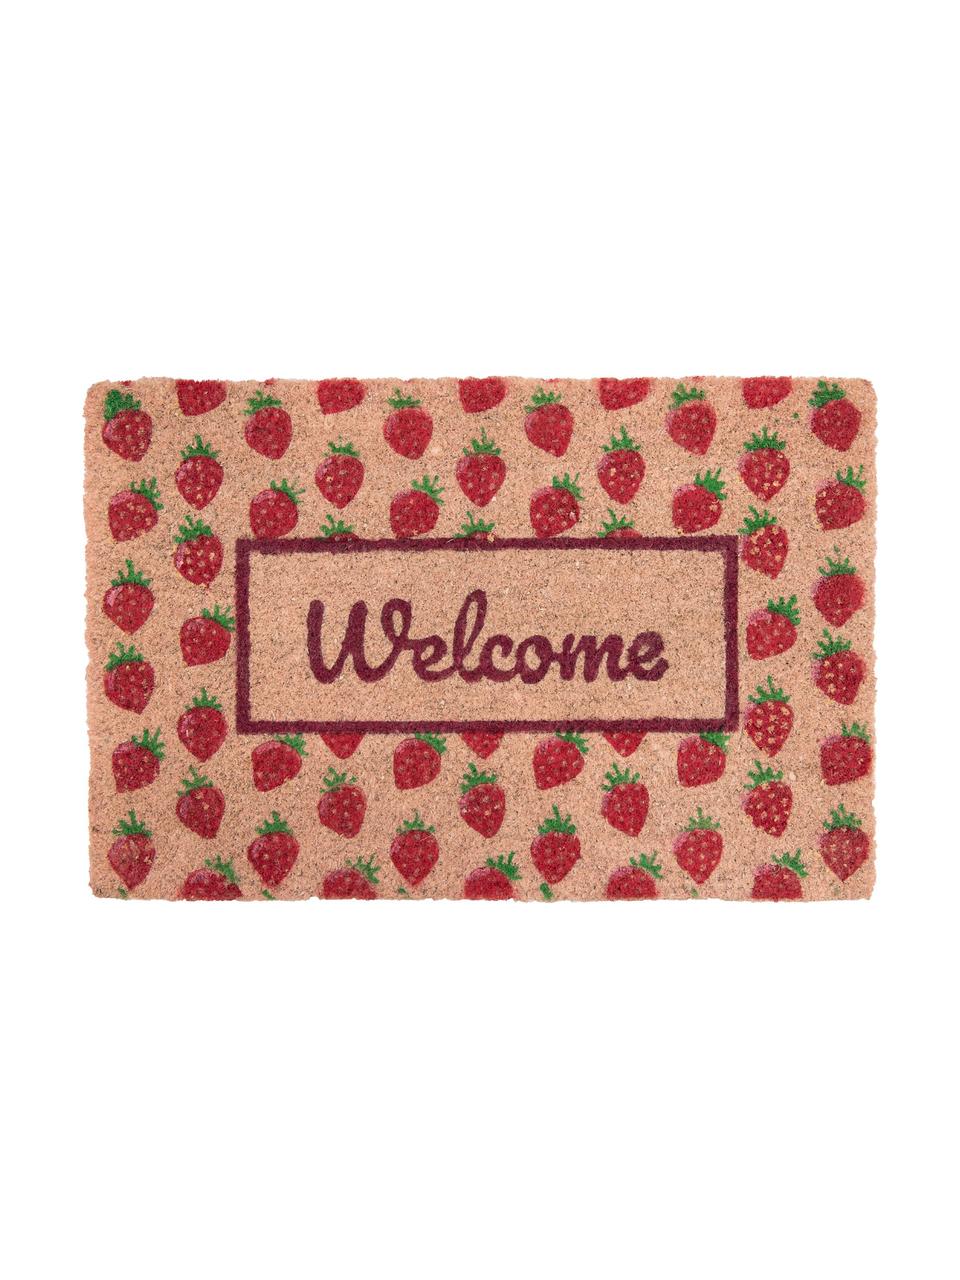 Deurmat Welcome, Kokosvezels, Roze, rood, groen, 40 x 60 cm